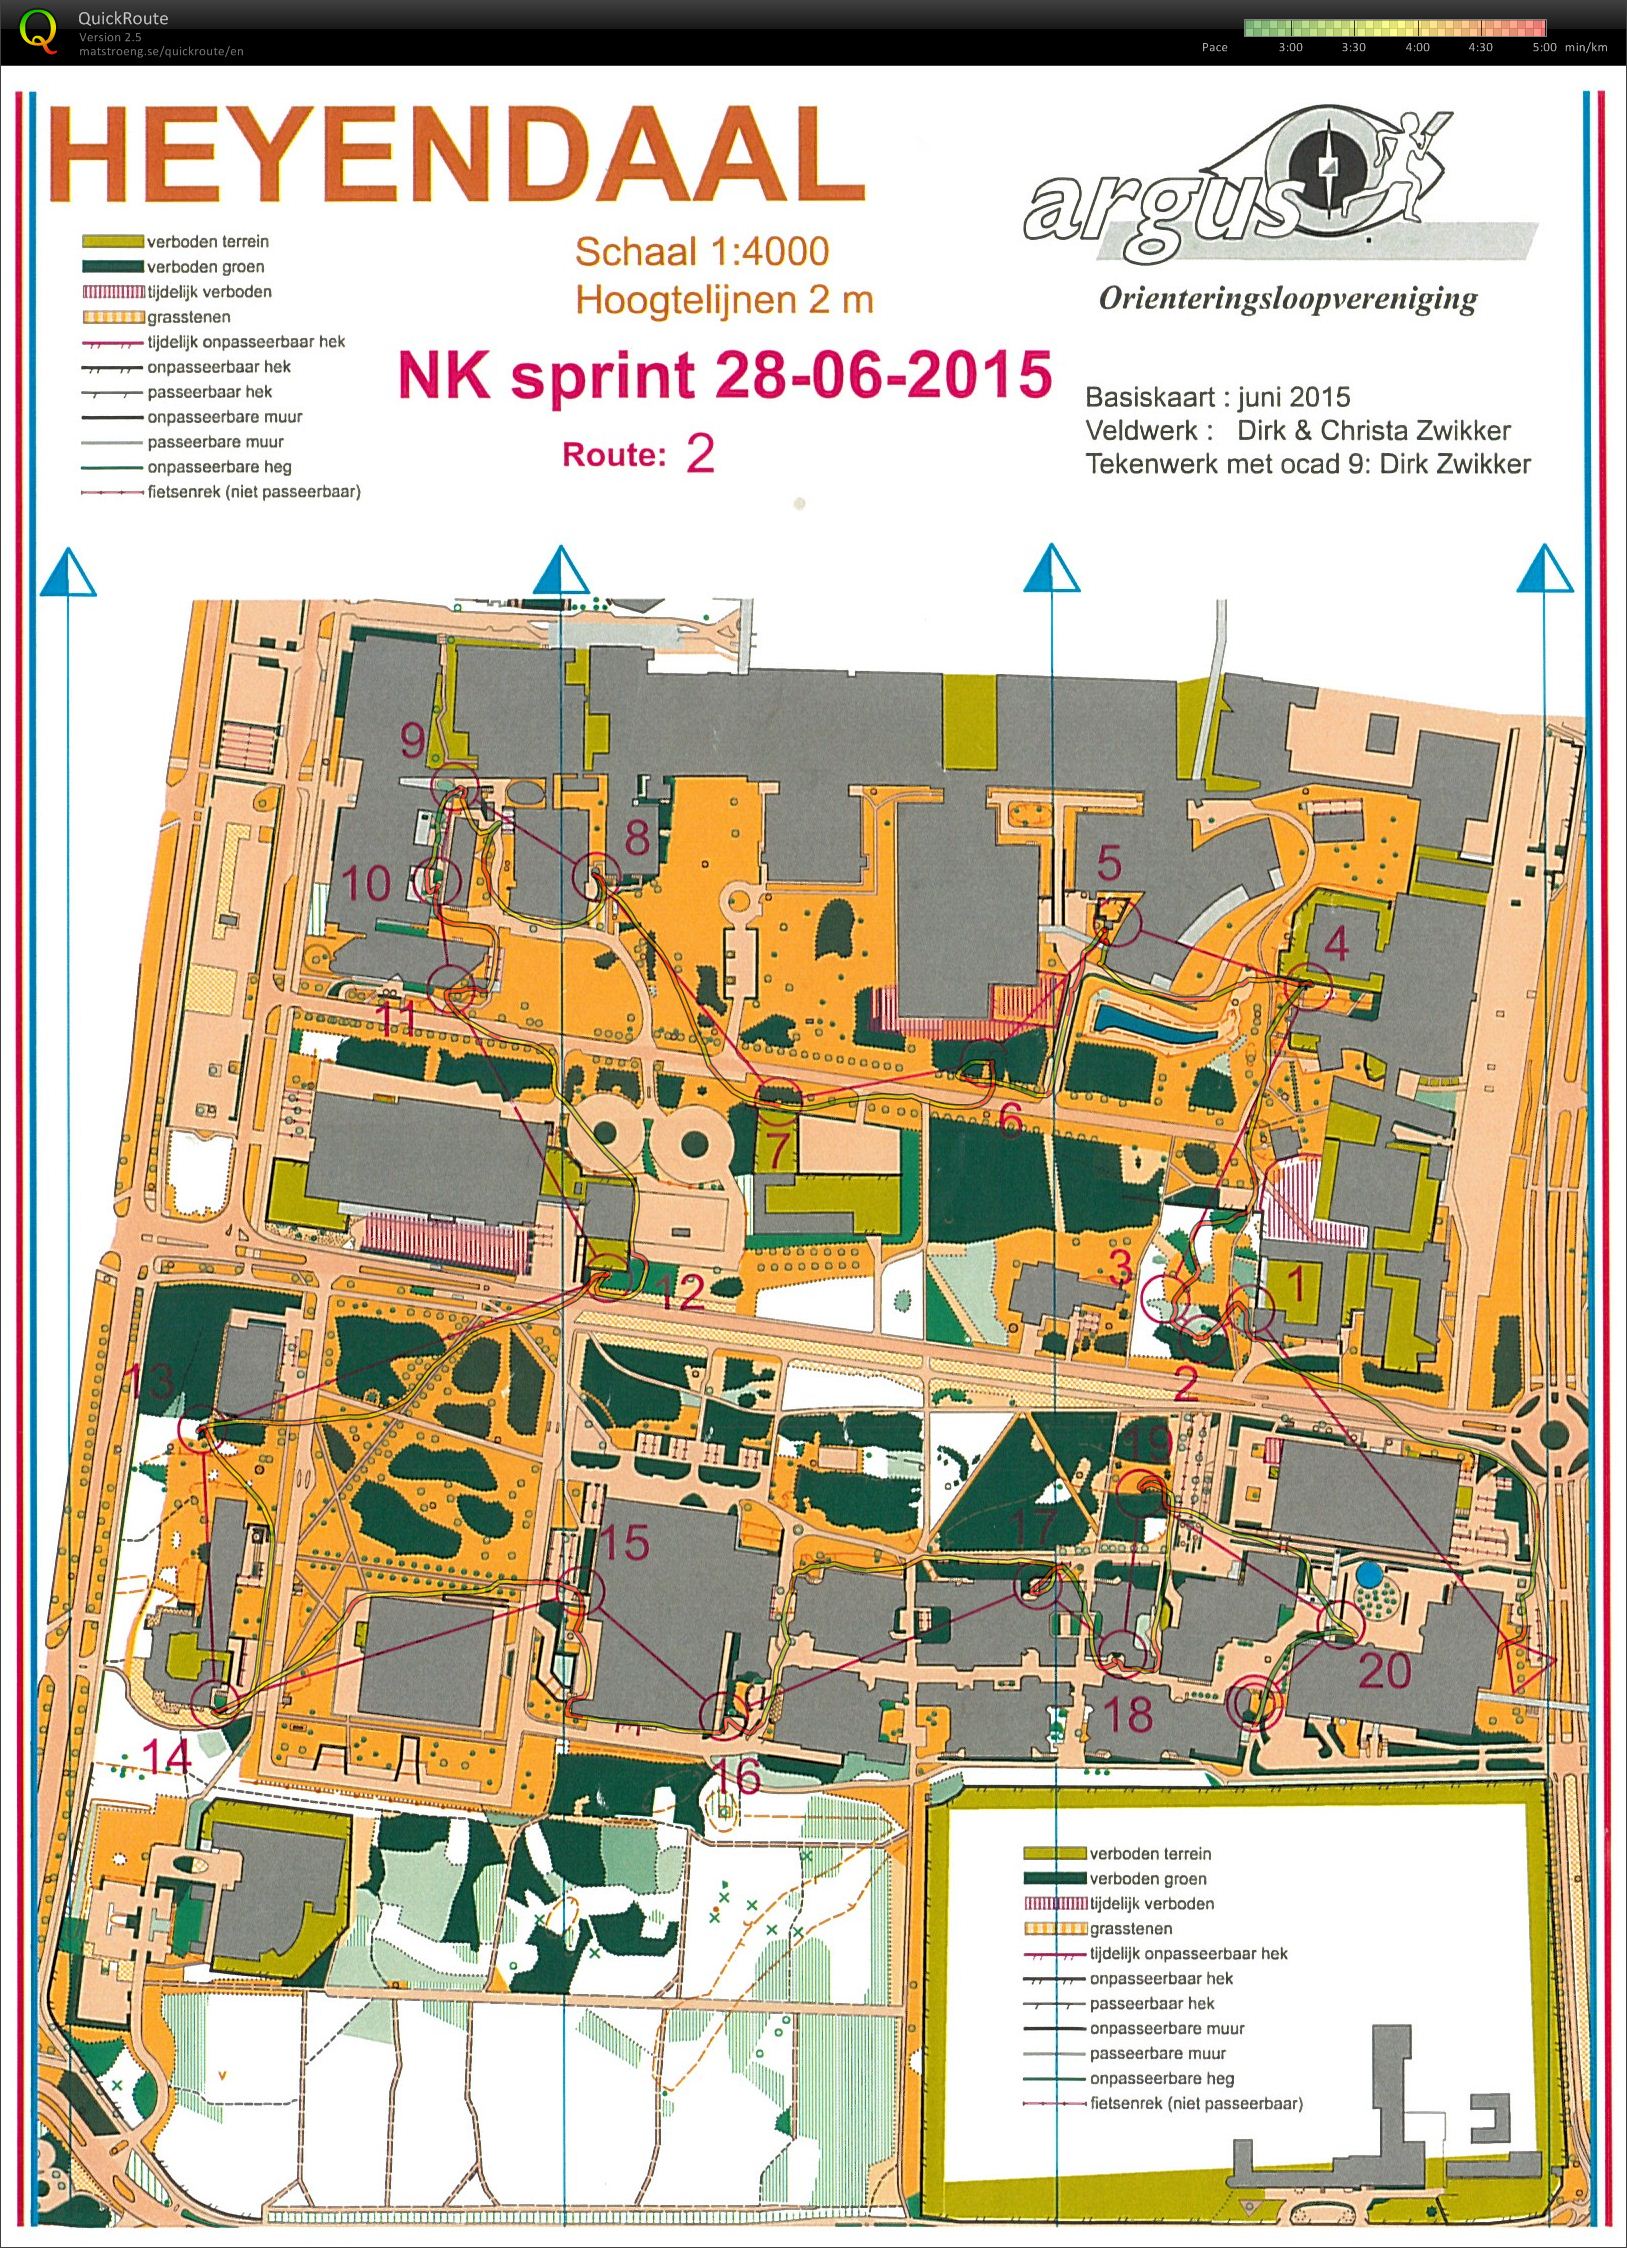 NK Sprint Heyendaal (28.06.2015)